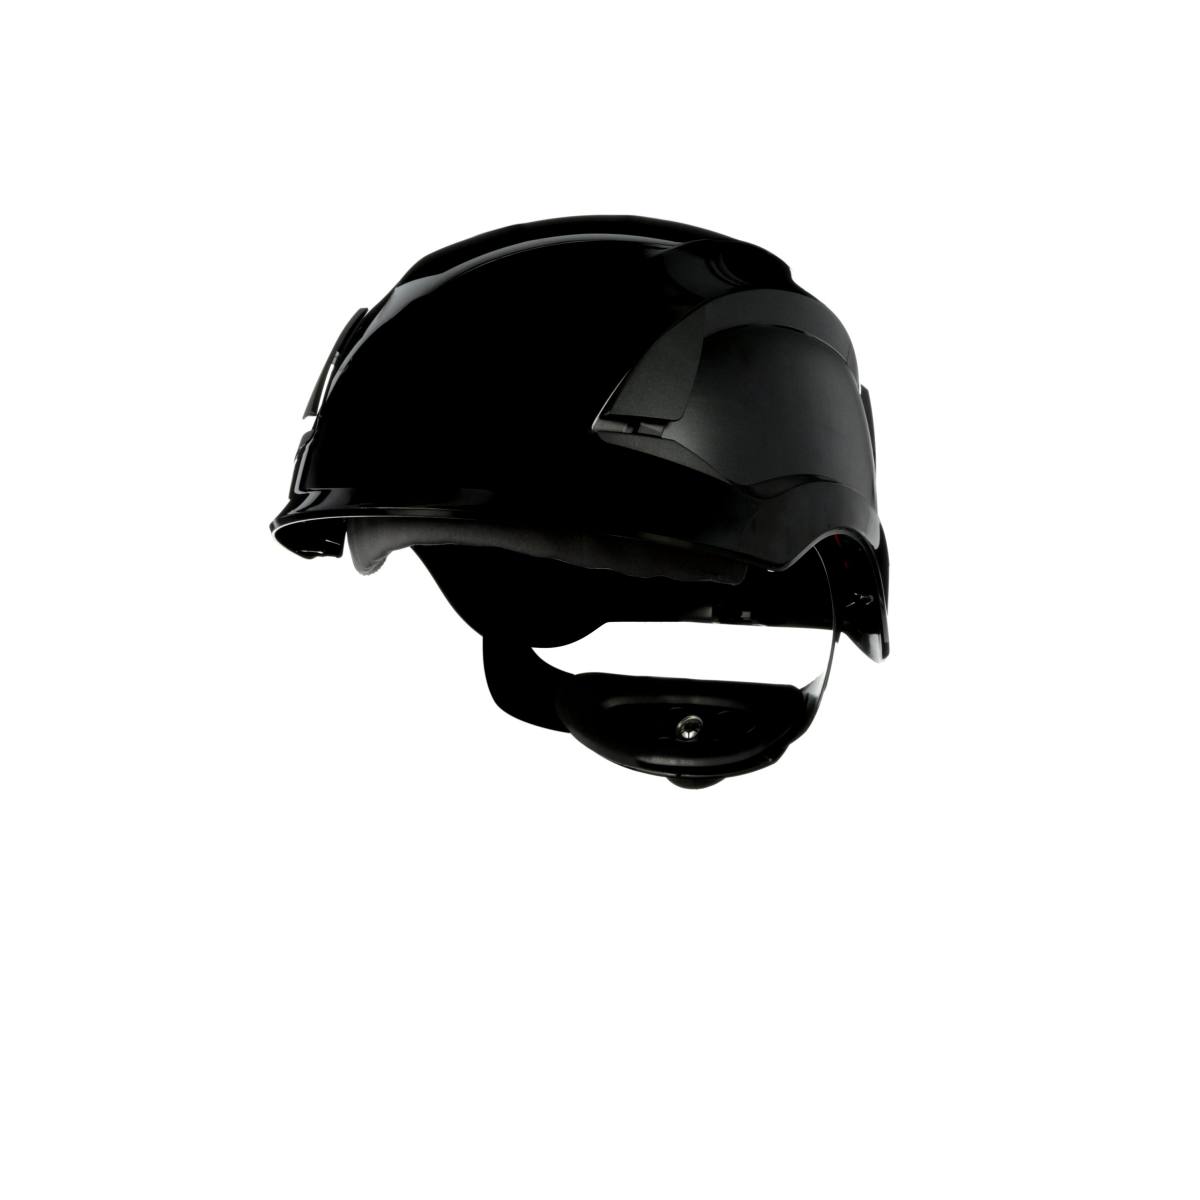 3M SecureFit safety helmet, X5512V-CE, black, ventilated, CE